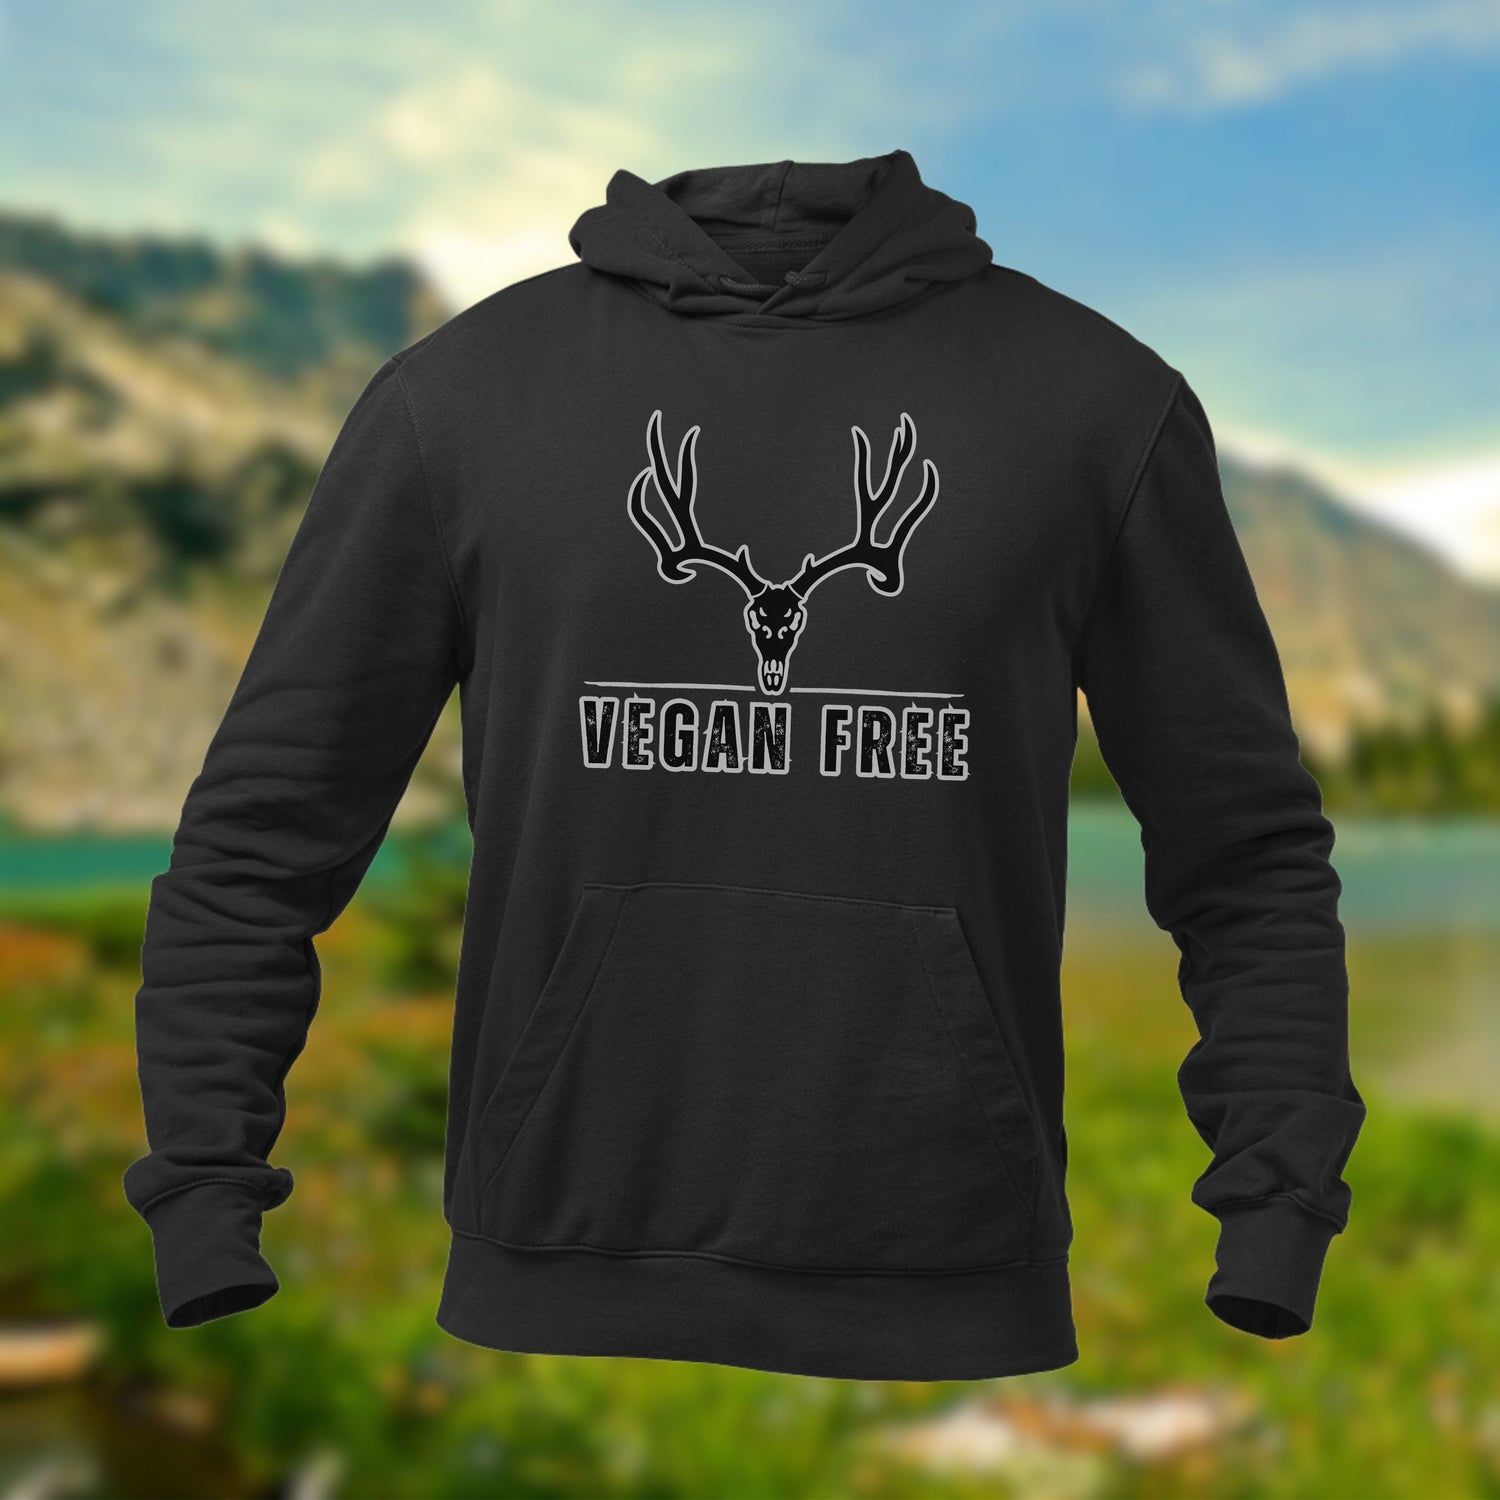 Hunting Hoodie - Vegan Free - Mule Deer